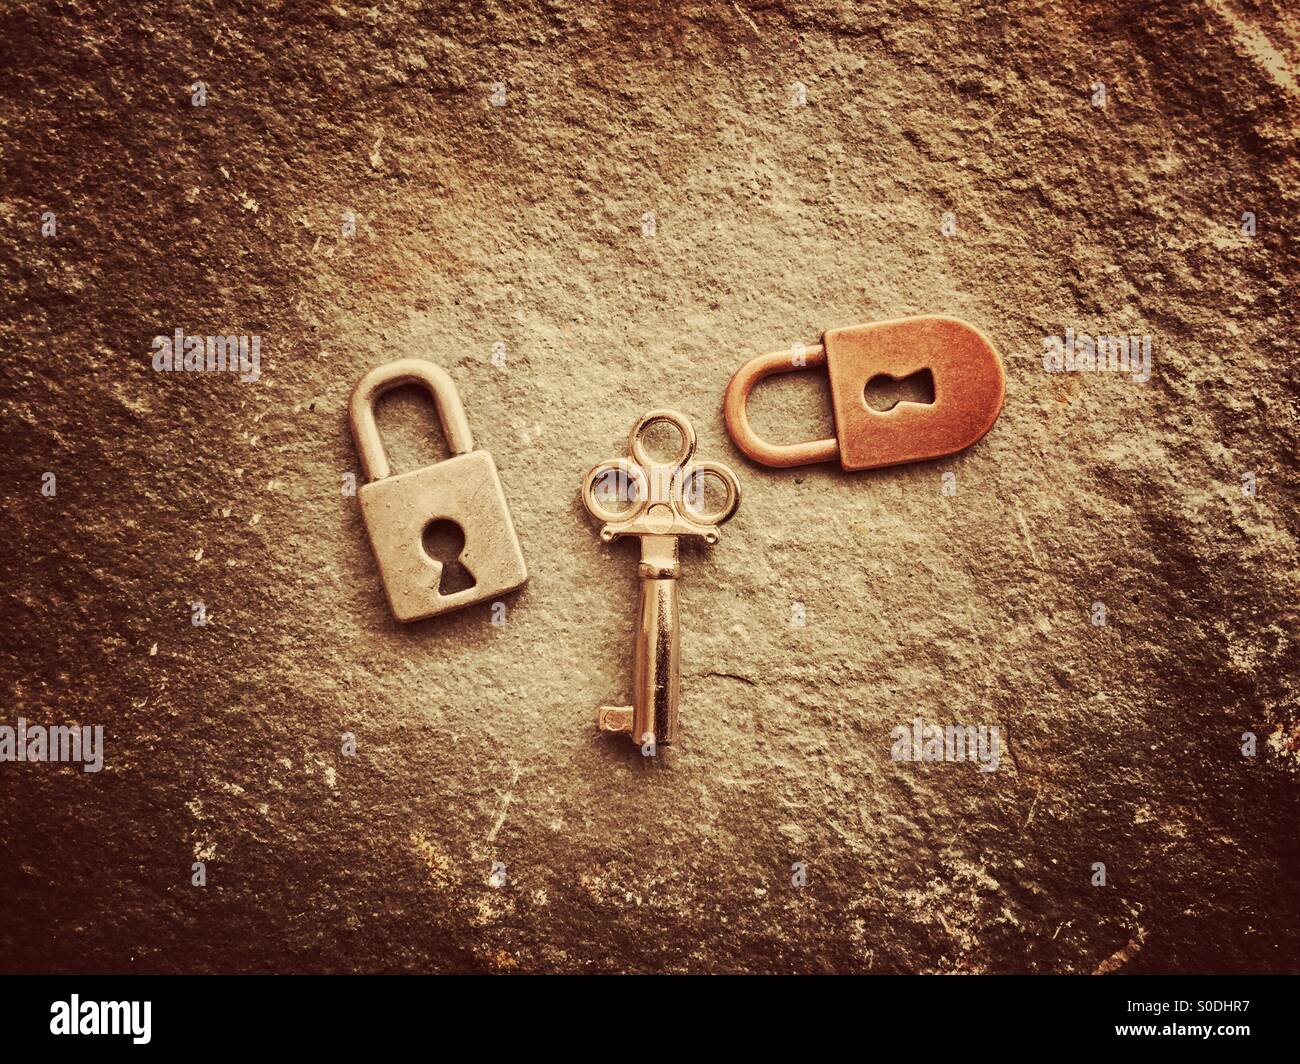 Locks and key Stock Photo